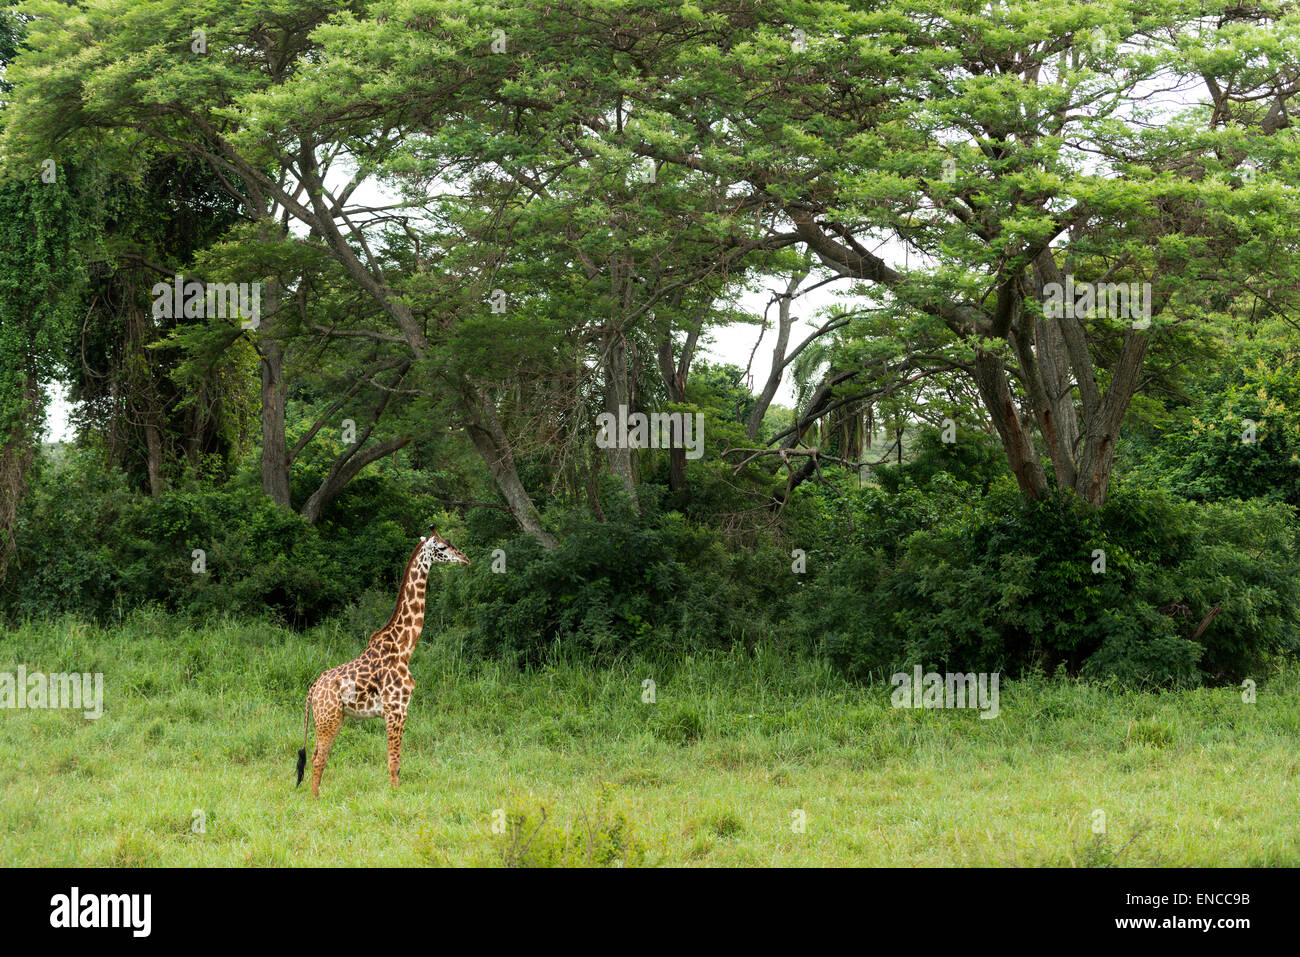 Young giraffe standing, Serengeti, Tanzania, Africa Stock Photo